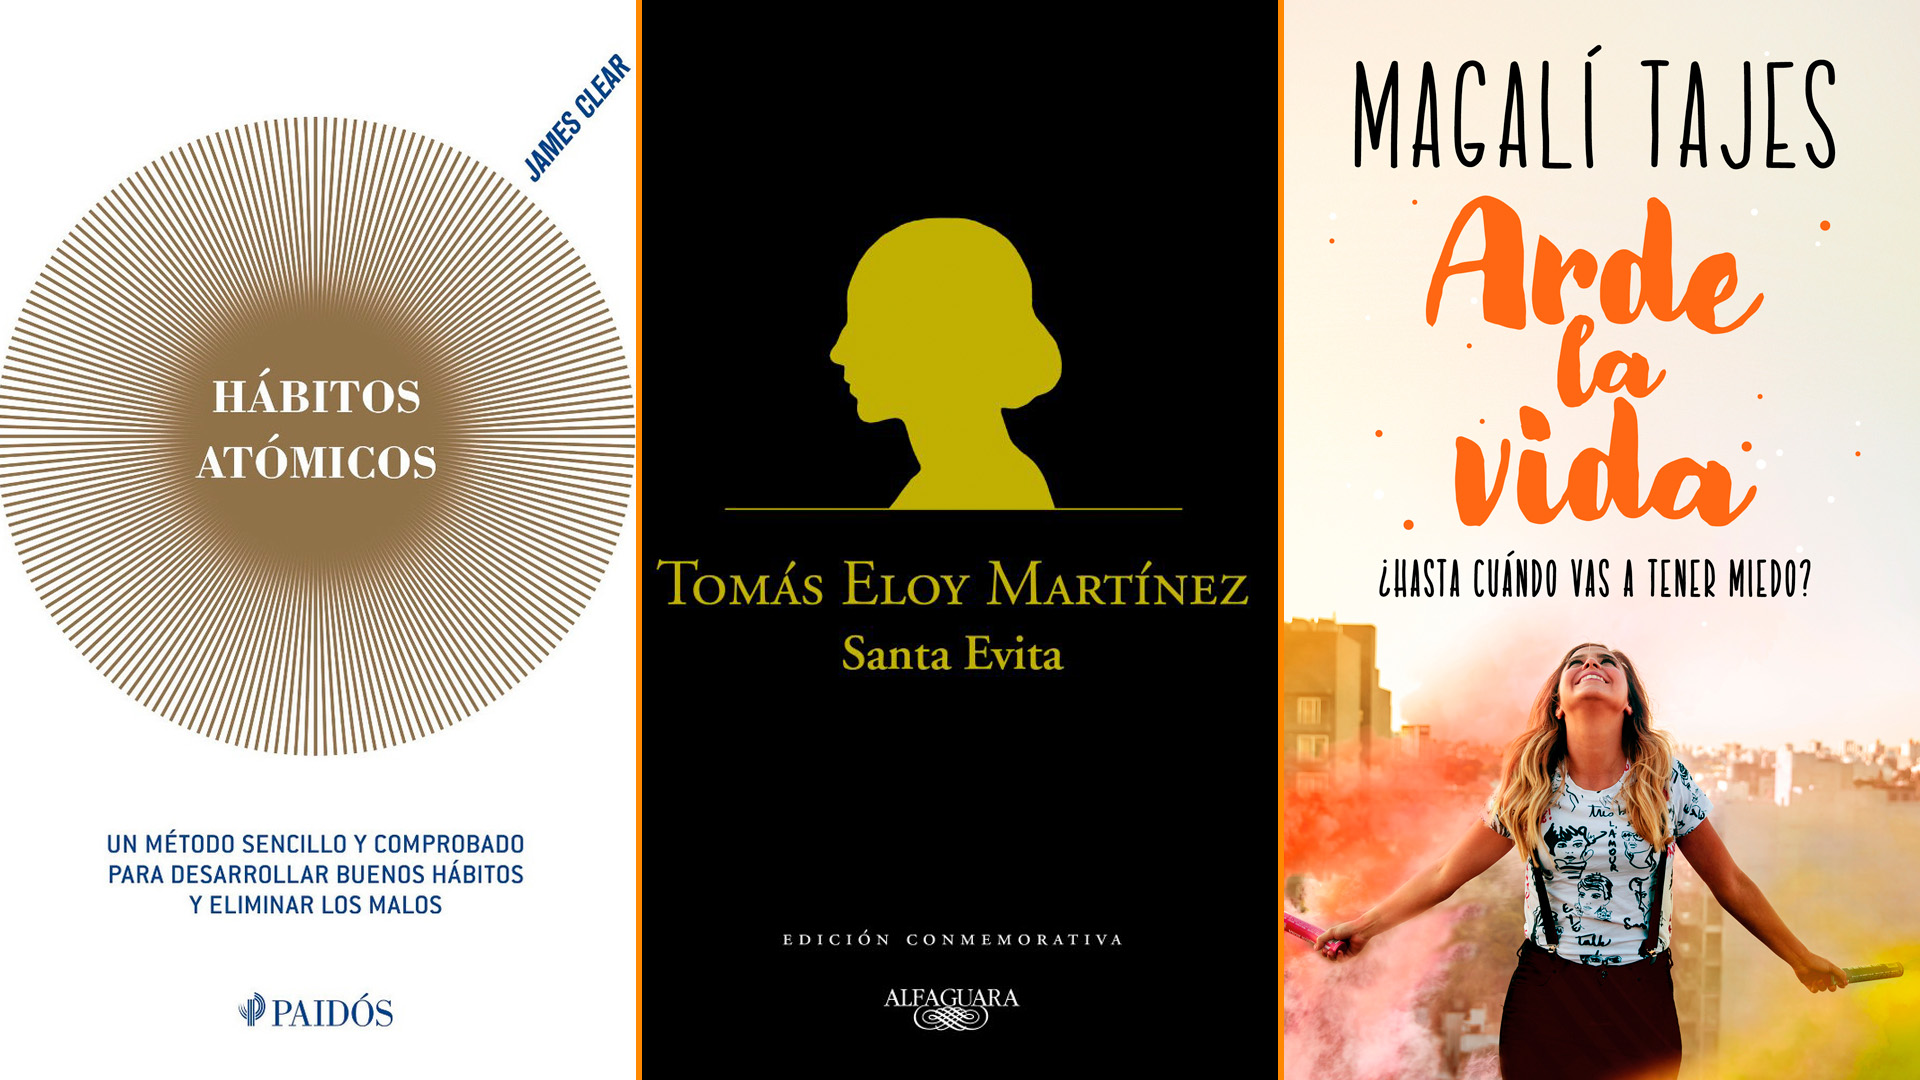 Qué leer el fin de semana: “Hábitos atómicos”, Magalí Tajes y el bestseller internacional “Santa Evita” por menos de 850 pesos argentinos